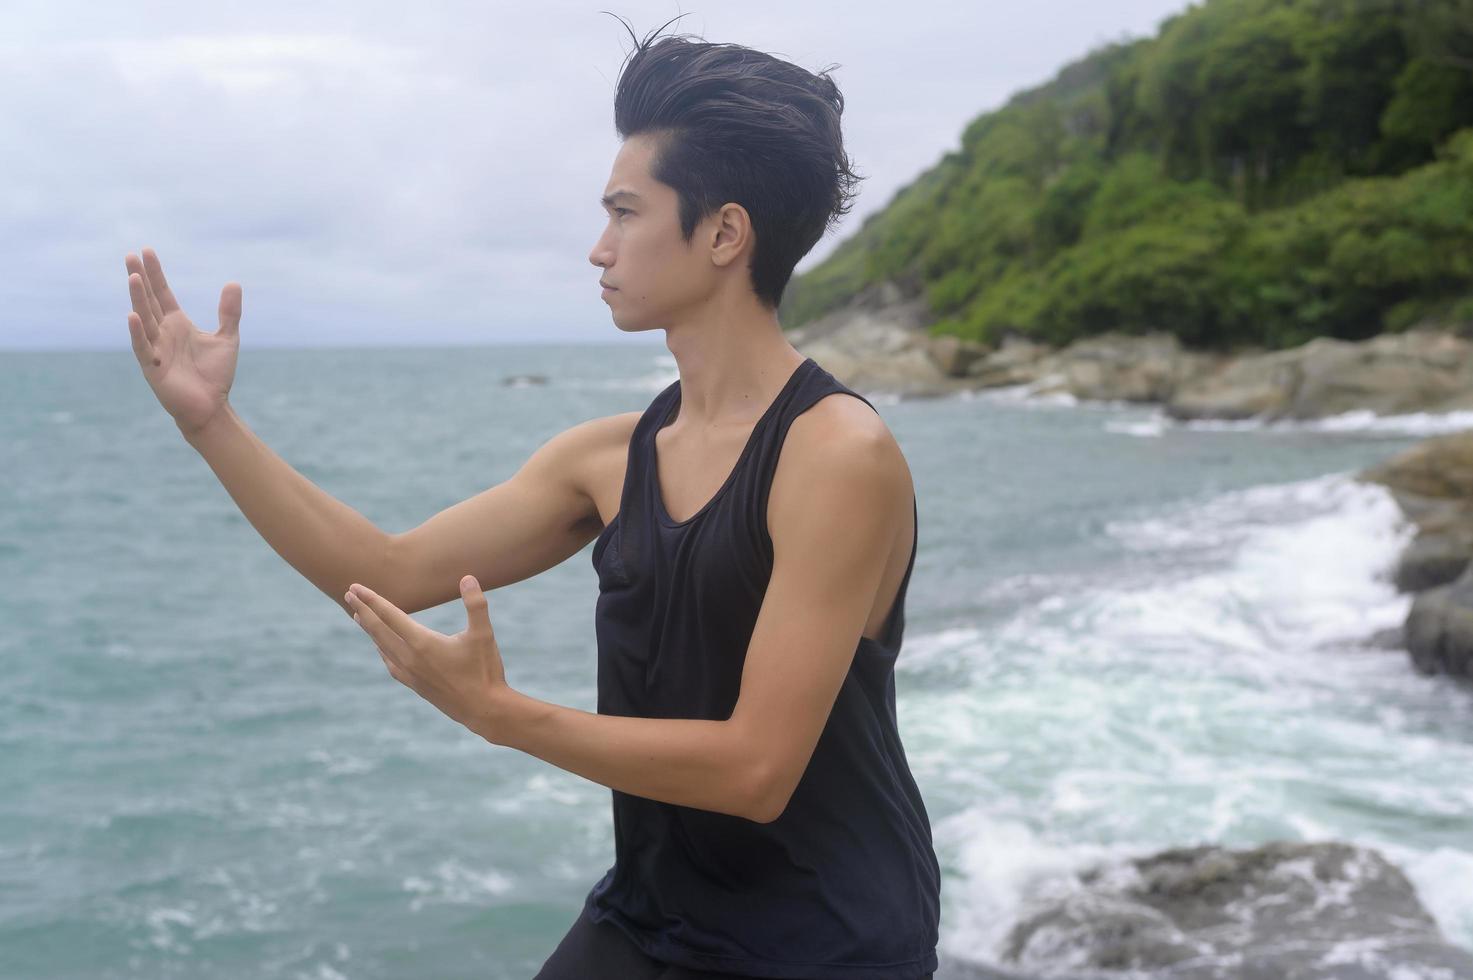 jonge man in sportkleding die vechtsport, qigong, tai chi op de rots aan zee doet, gezondheids- en meditatieconcept foto